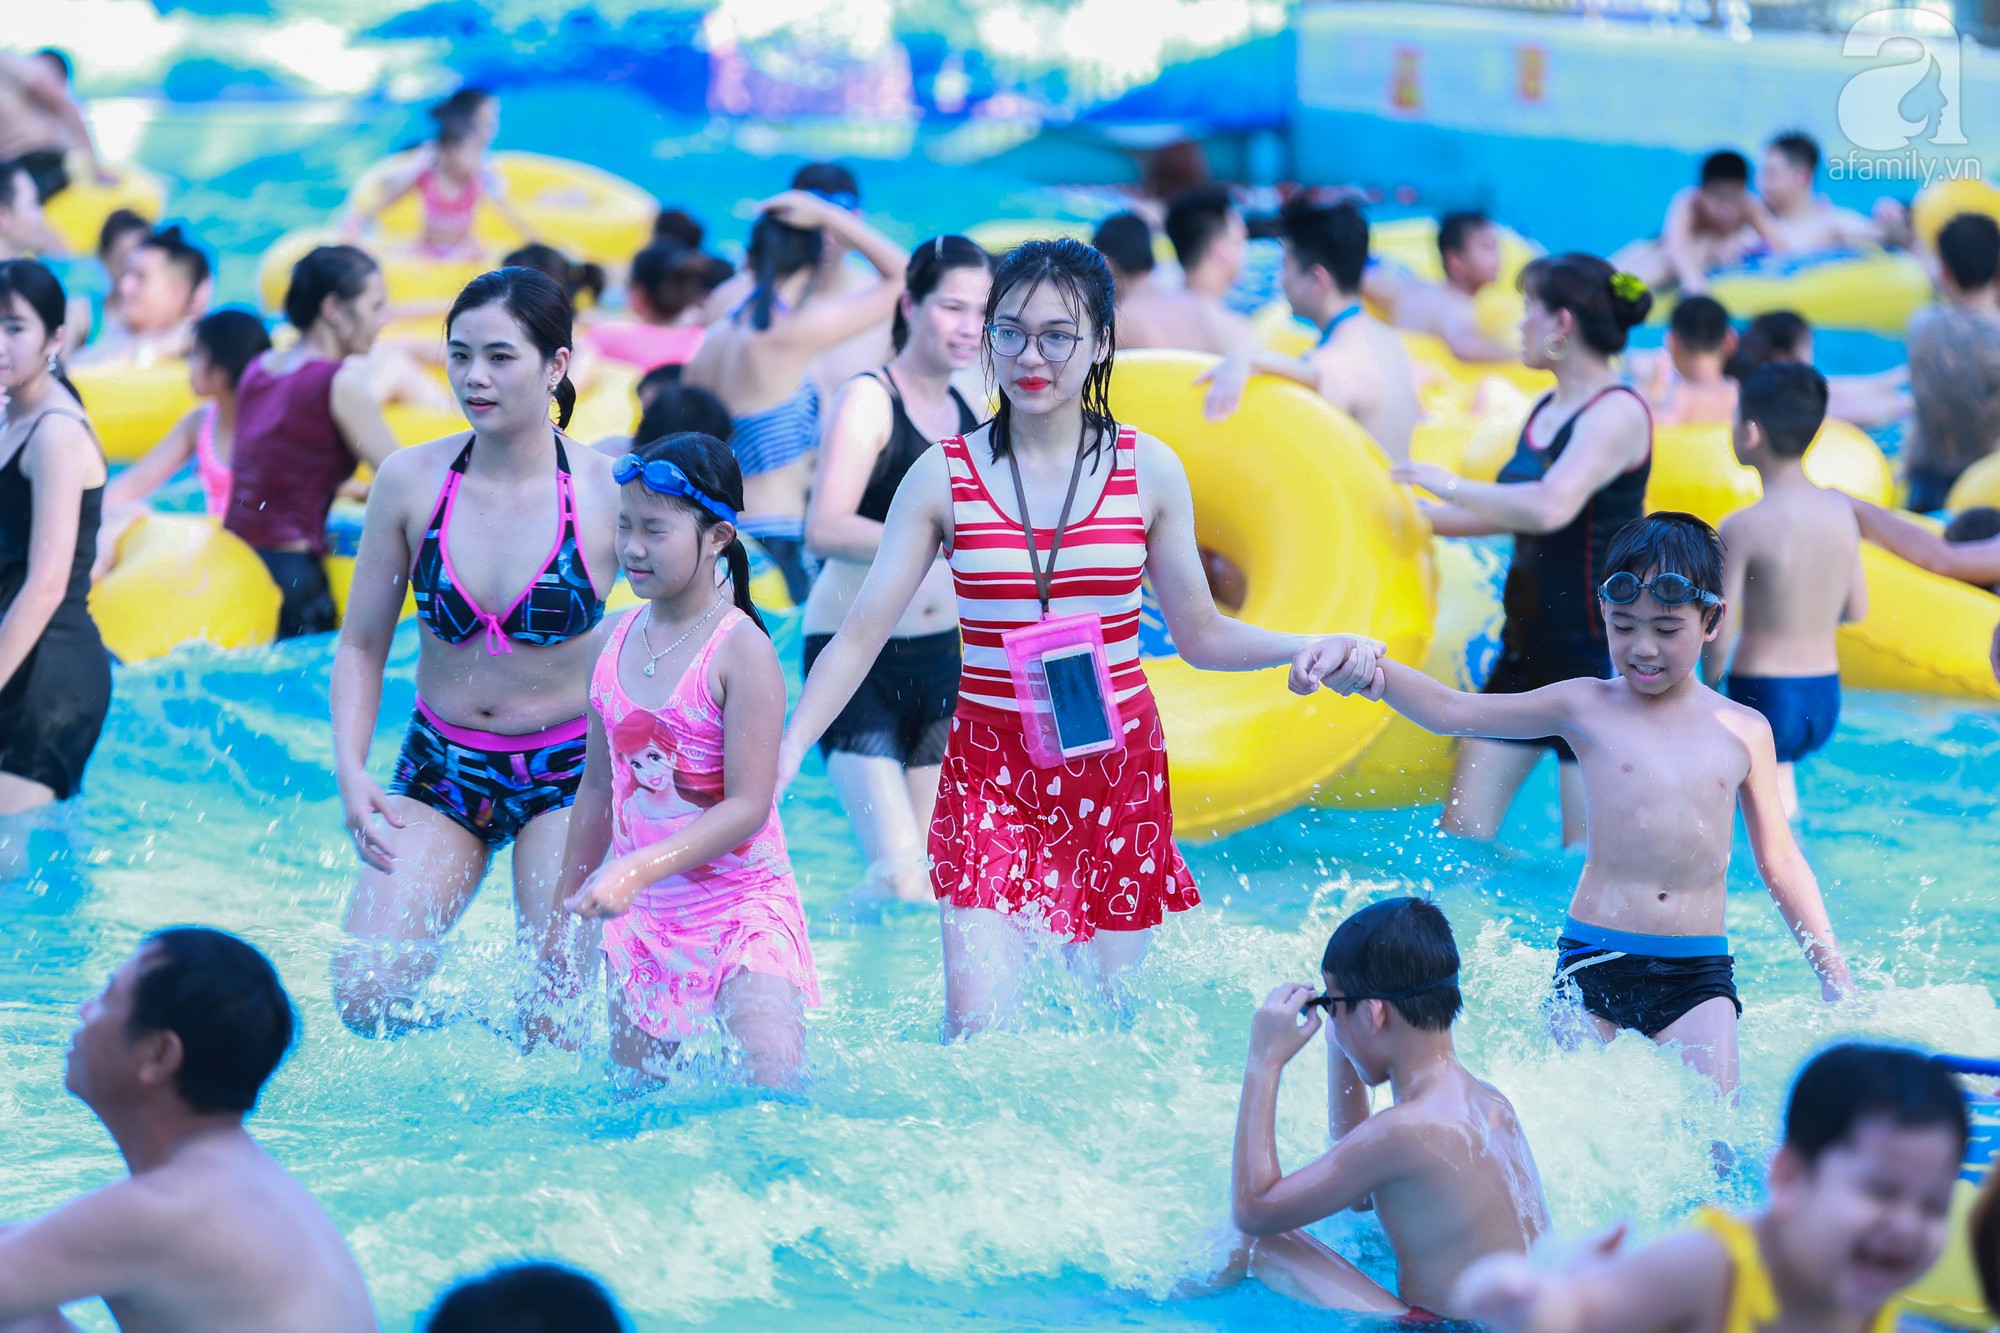 Chùm ảnh: Dân tình thỏa sức vùng vẫy giải nhiệt tại “bể bơi” lớn nhất Hà Nội - Ảnh 13.